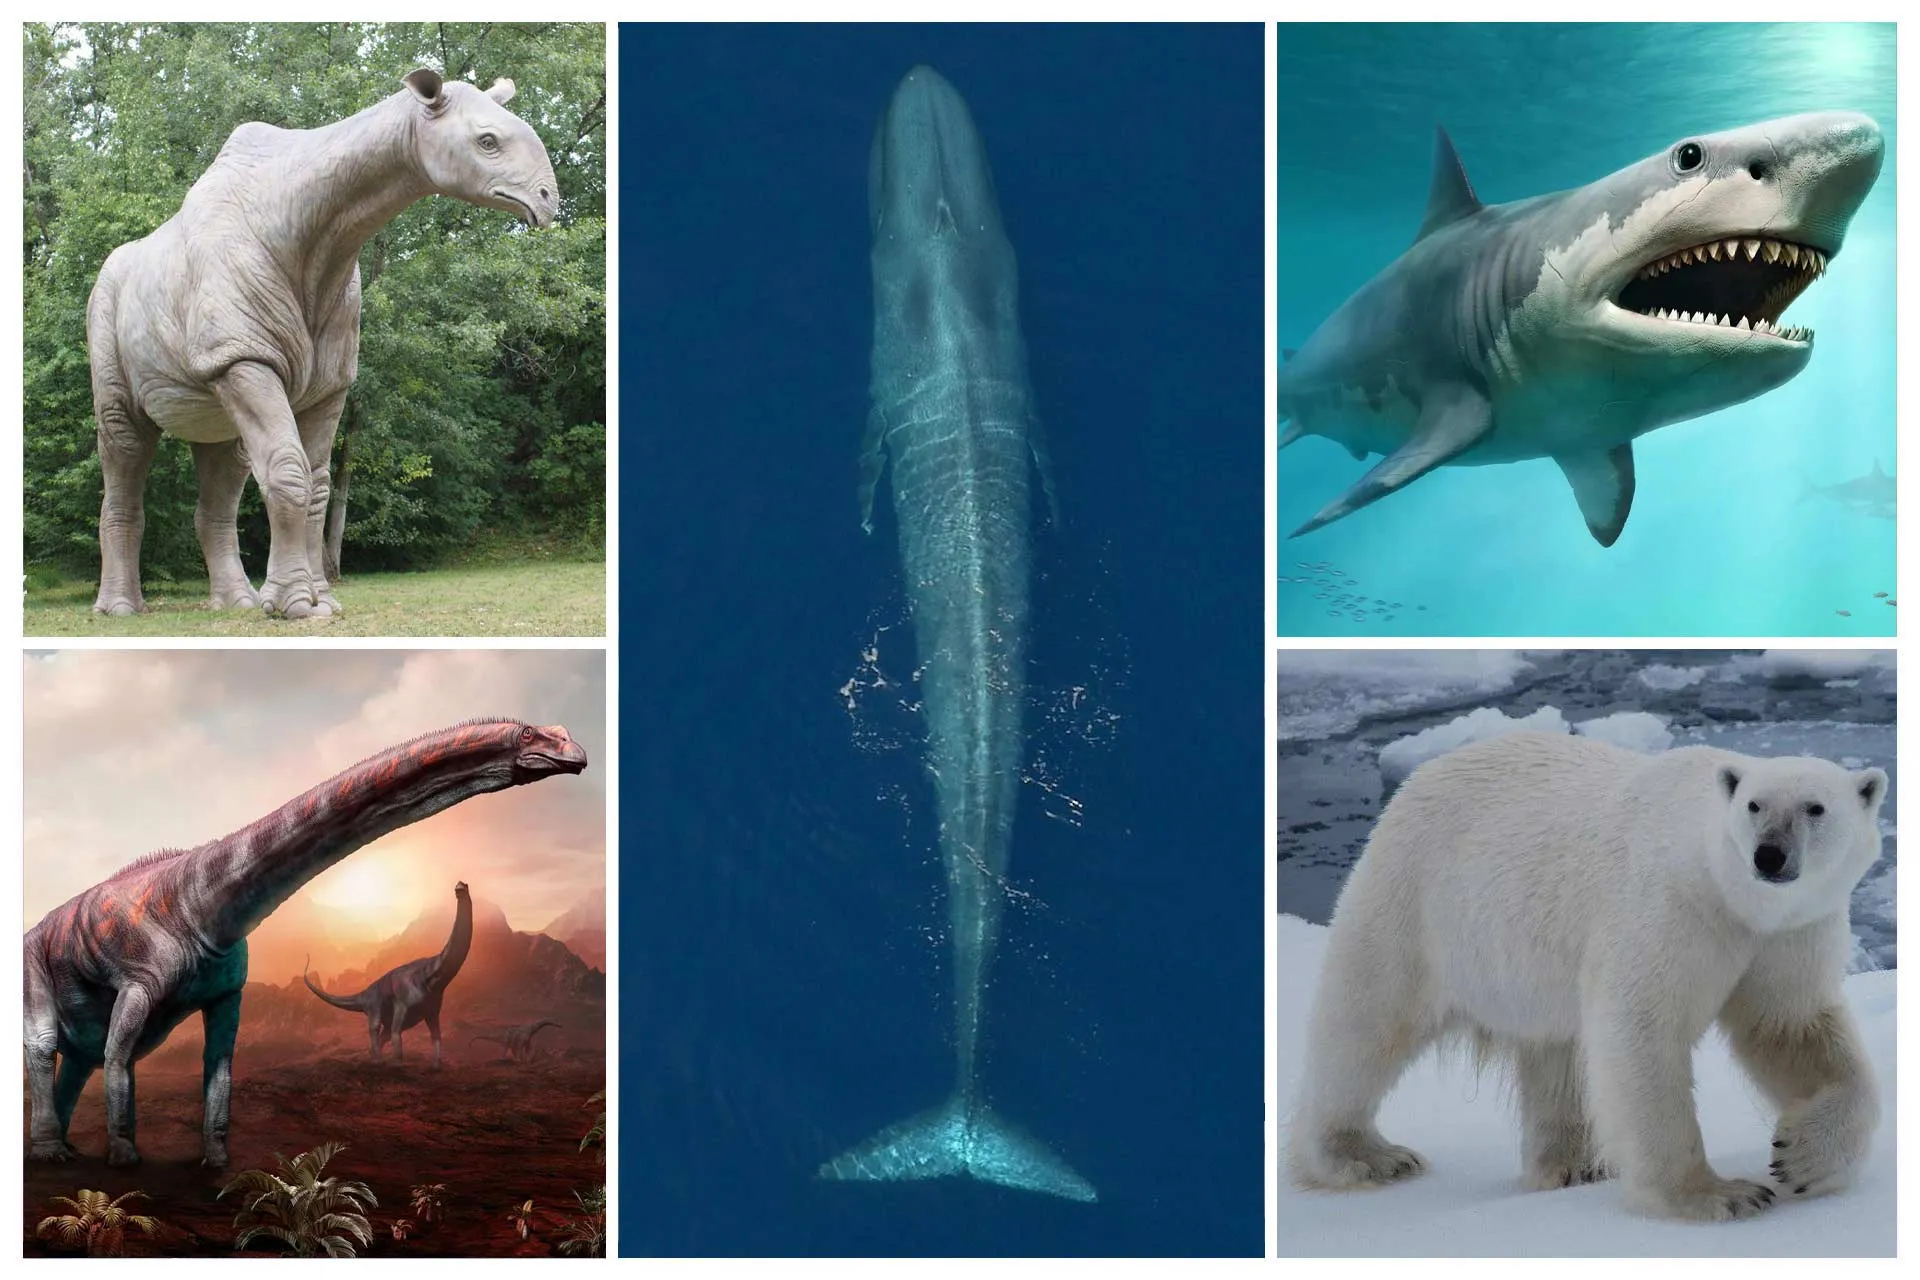 تصویر کلاژ برخی از بزرگ‌ترین حیوانات جهان شامل بلوچی‌دد، آرژانتیناسور، نهنگ آبی، مگالودون و خرس قطبی